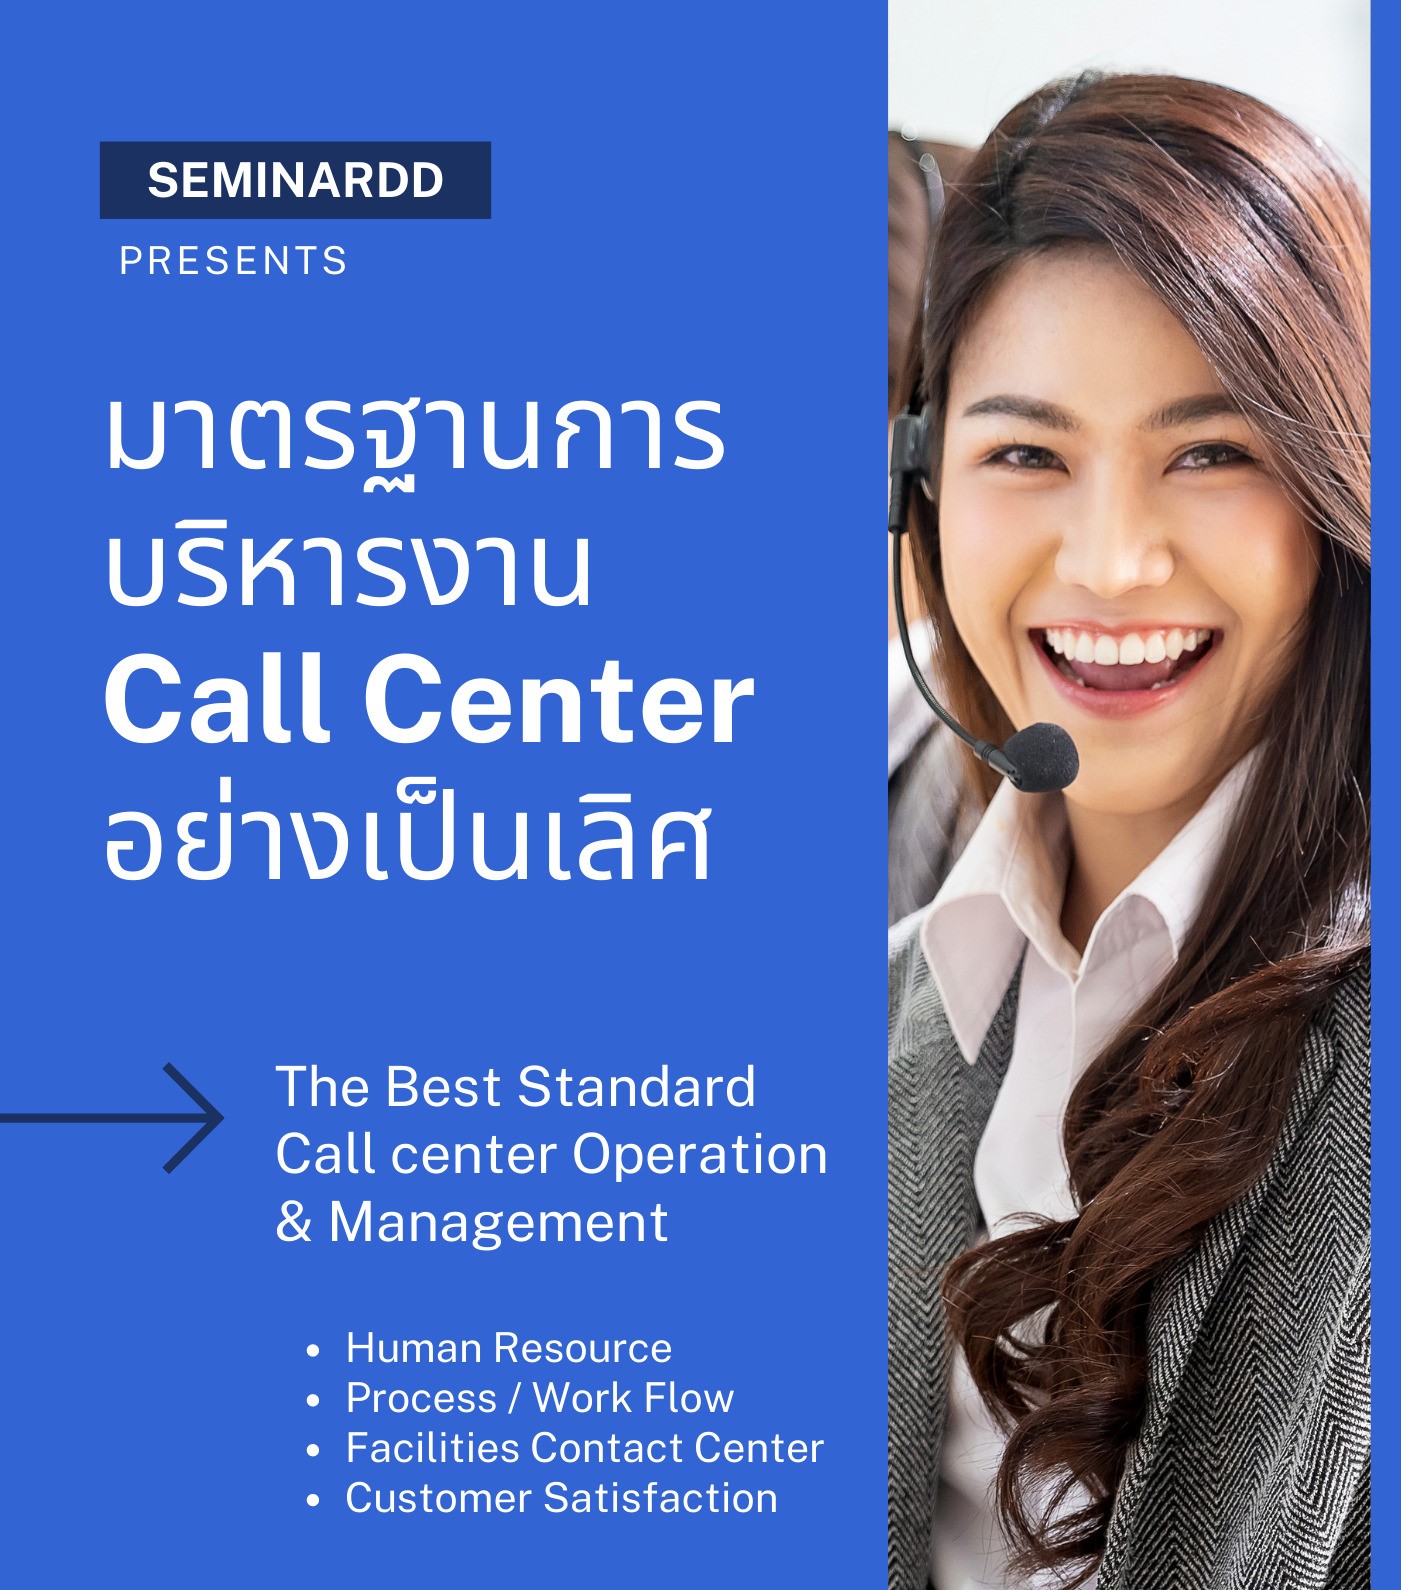 มาตรฐานการบริหารงาน Call Center อย่างเป็นเลิศ (The Best Standard Call center Operation & Management)